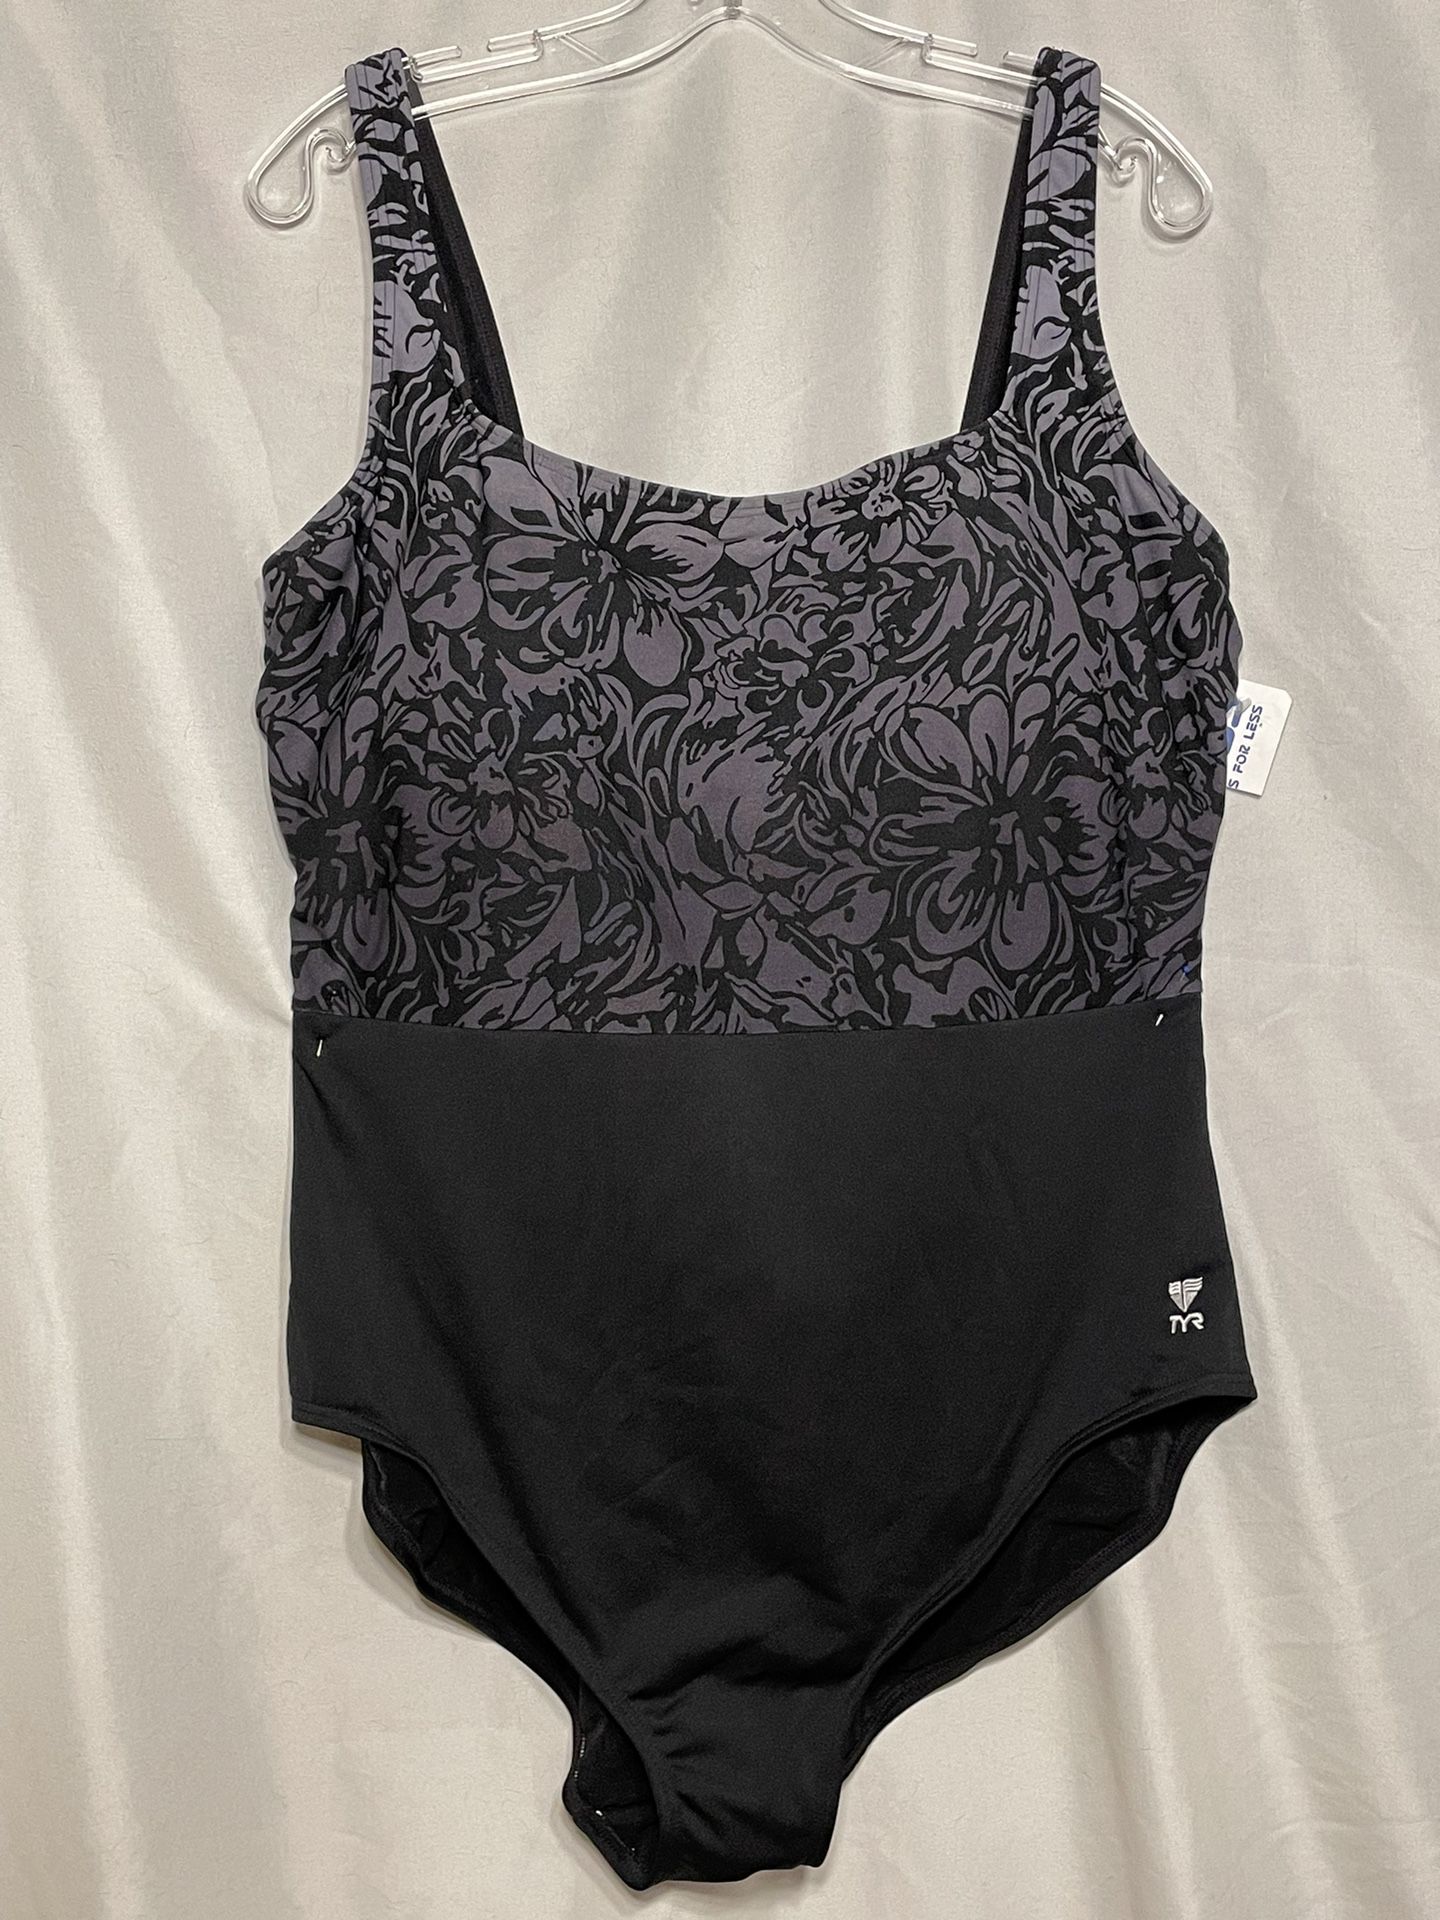 TYR Swimsuit Women's Size 24 for Sale in Phoenix, AZ - OfferUp